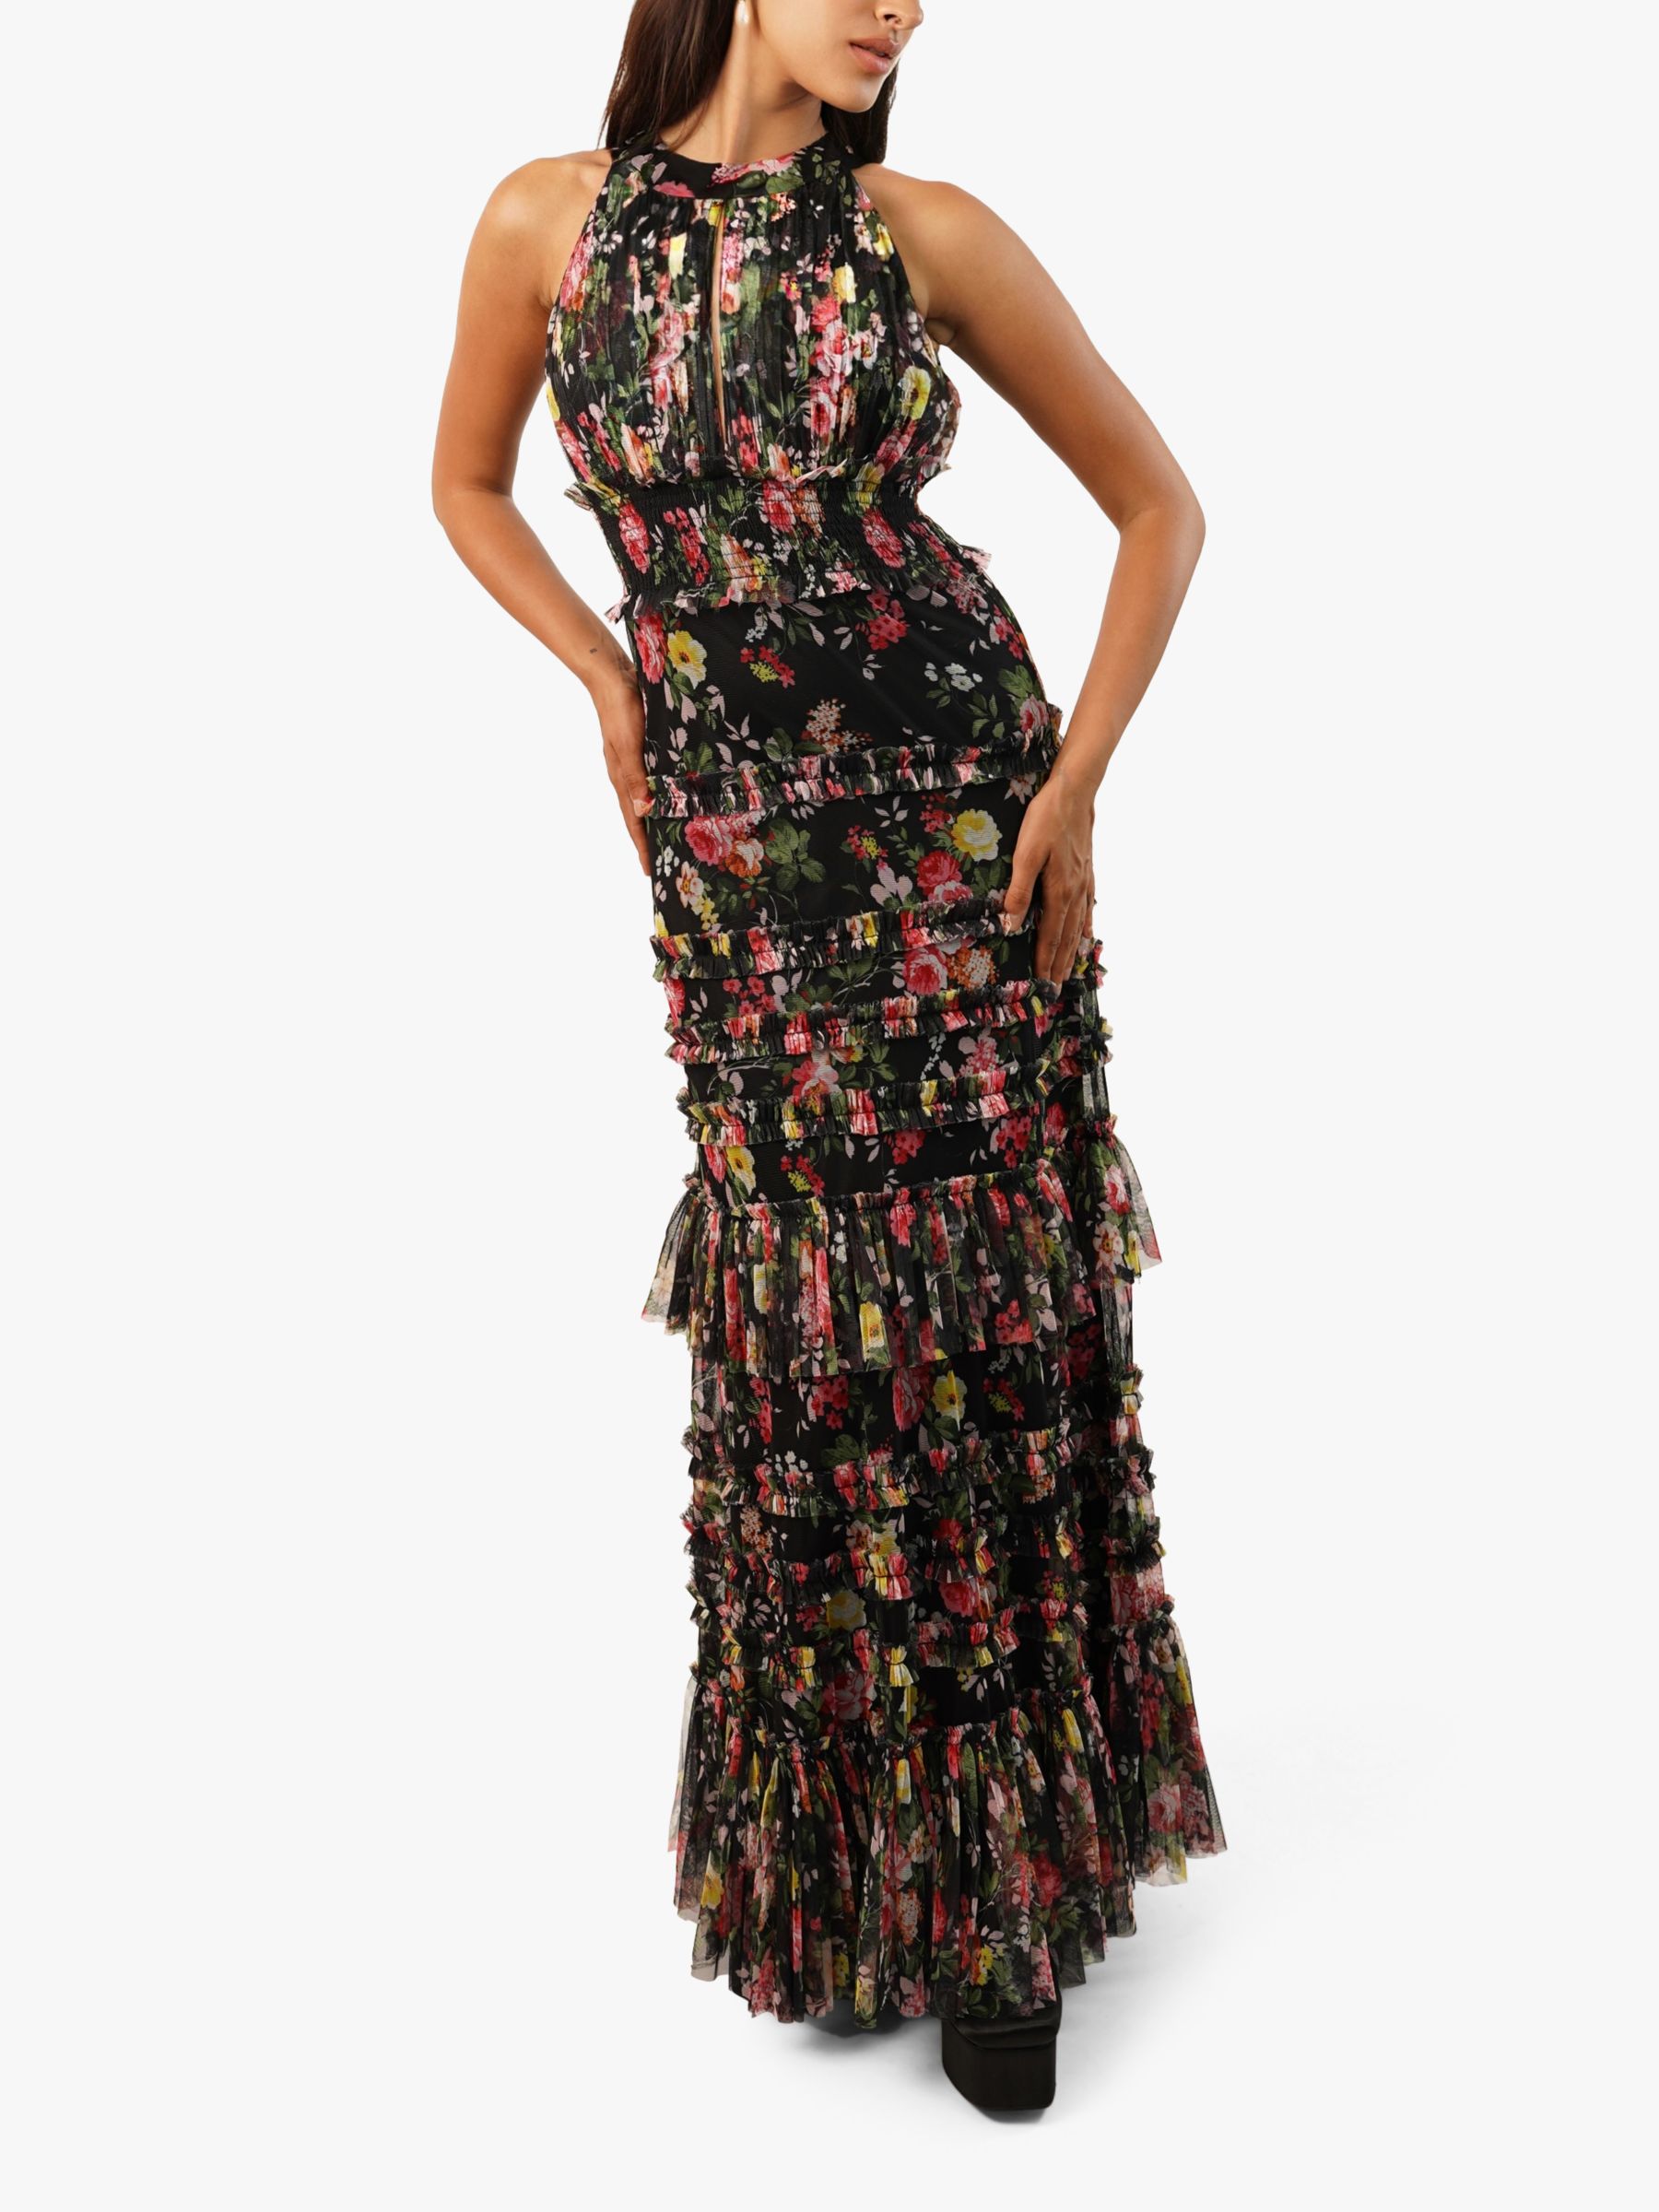 Lace & Beads Santiago Floral Maxi Dress, Black